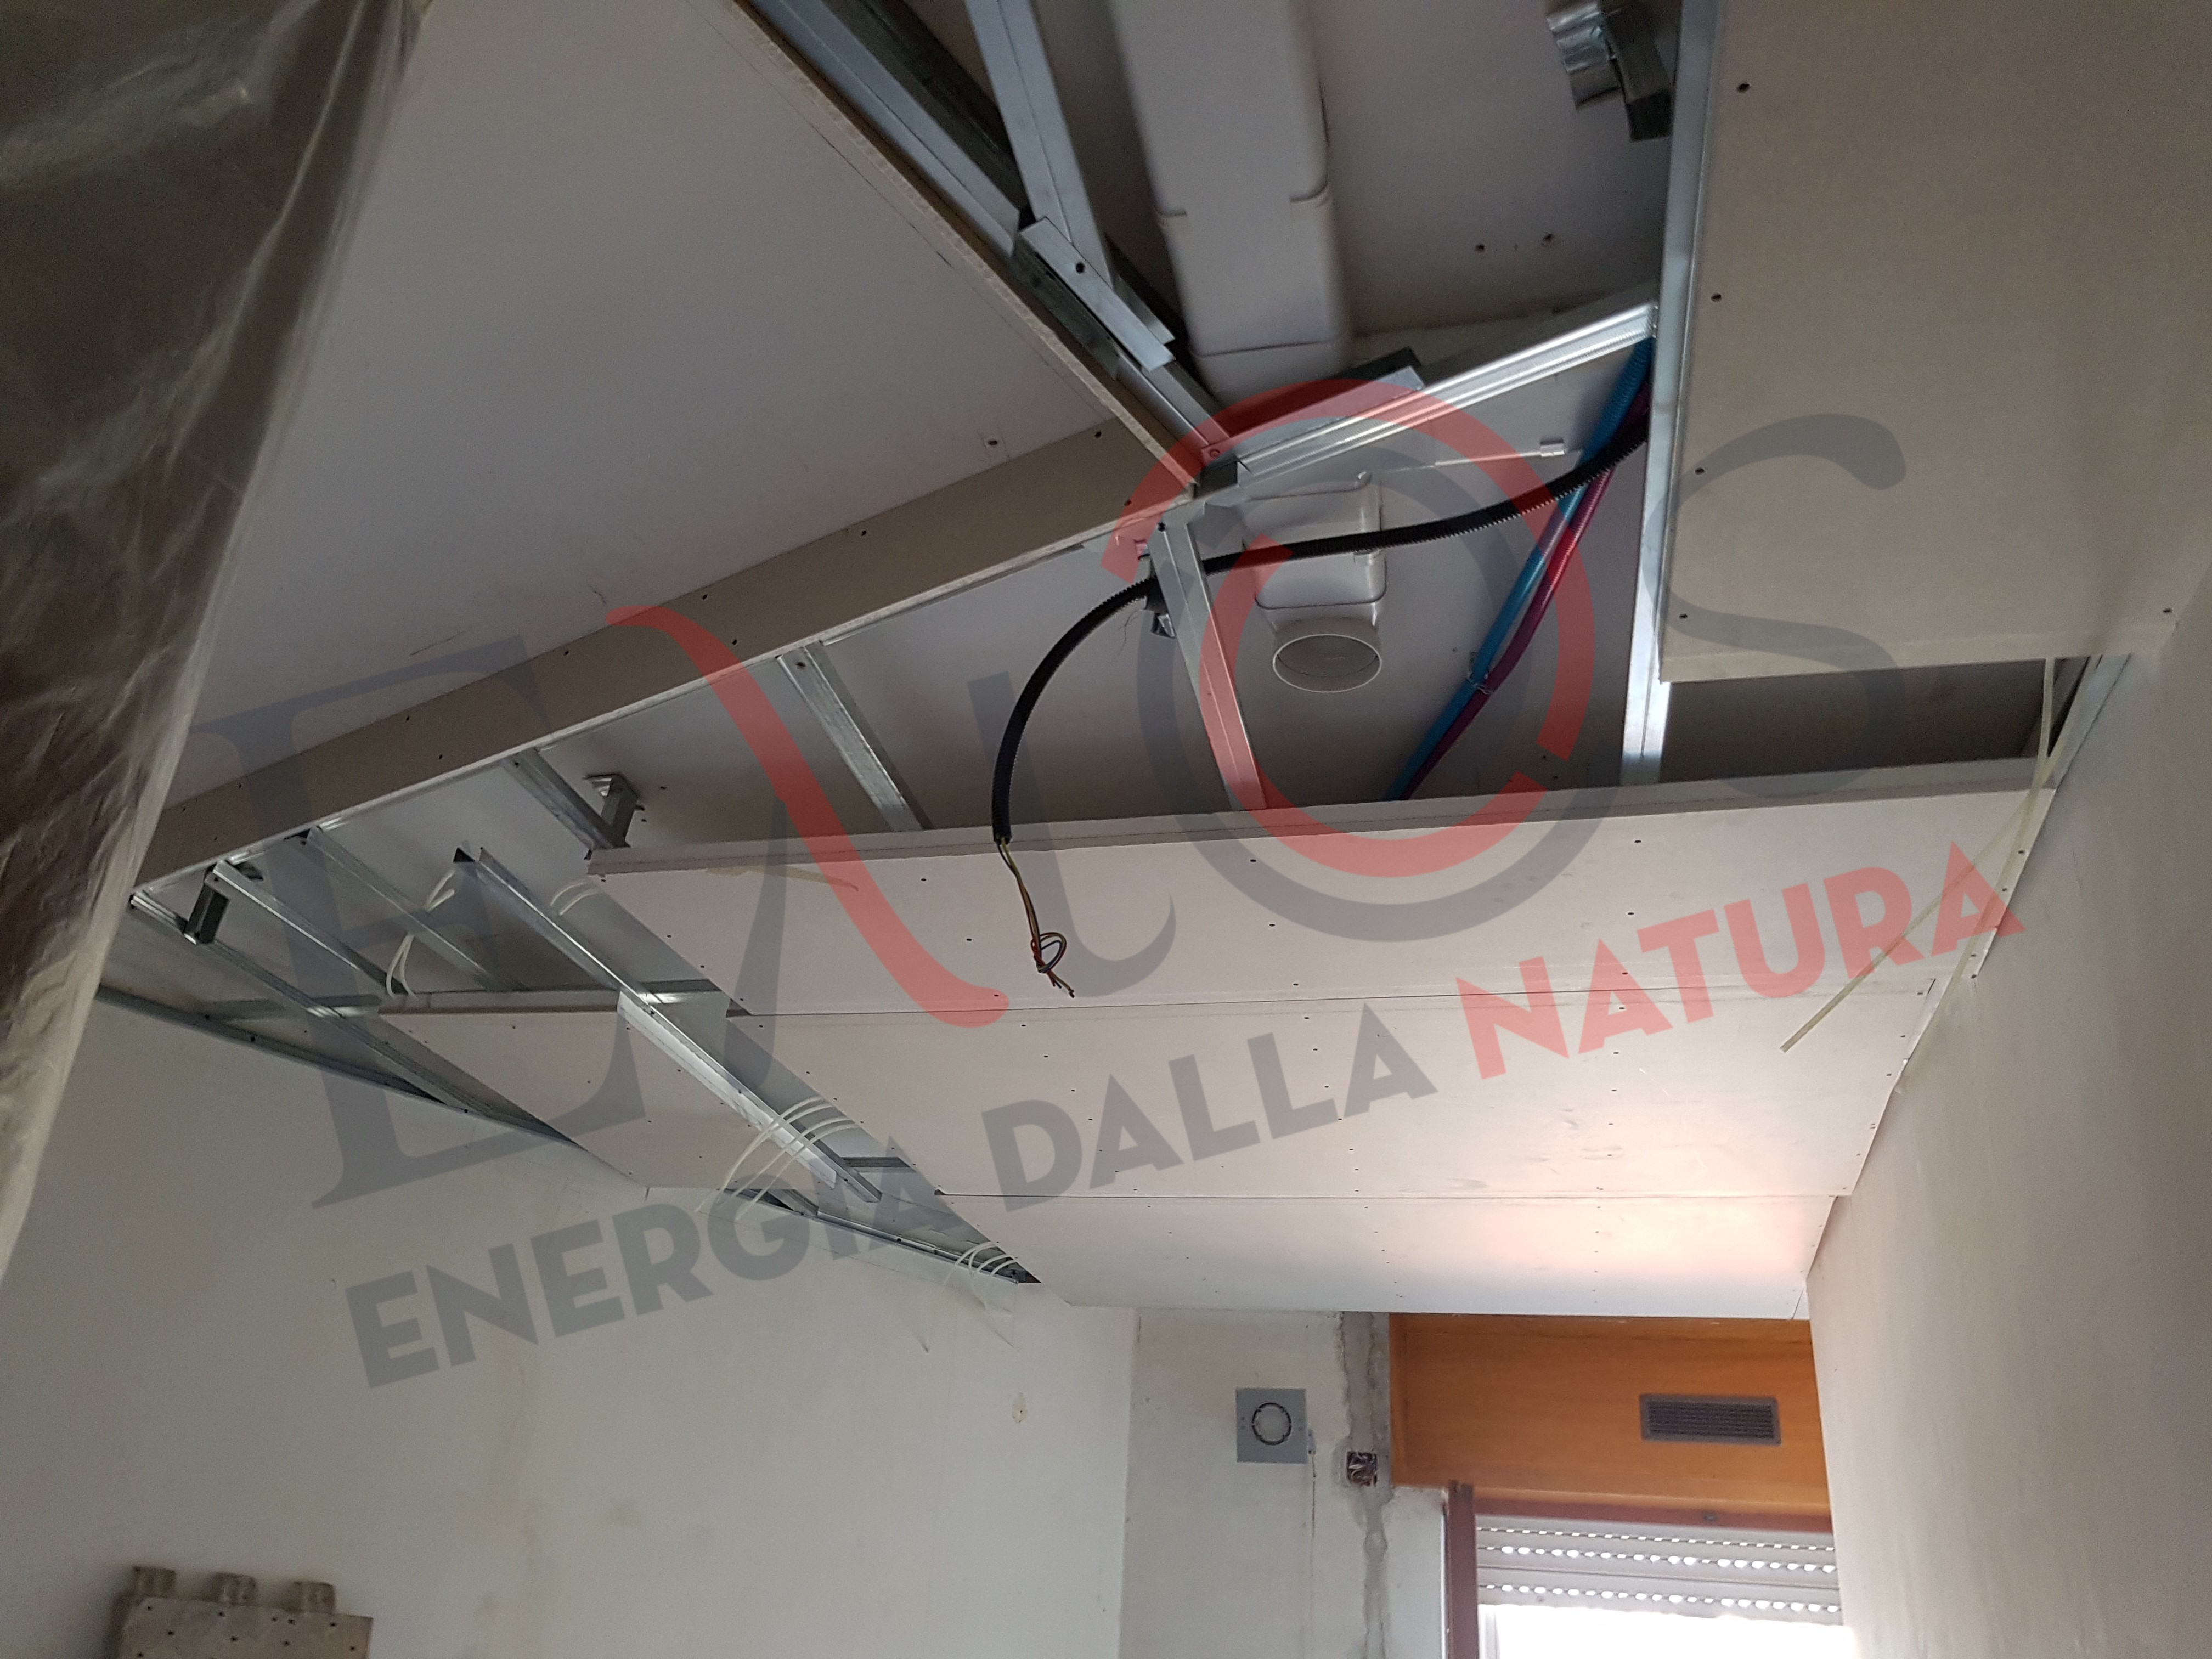 Impianto radiante a soffitto per riscaldamento e raffrescamento integrato con impianto di ventilazione meccanica controllata